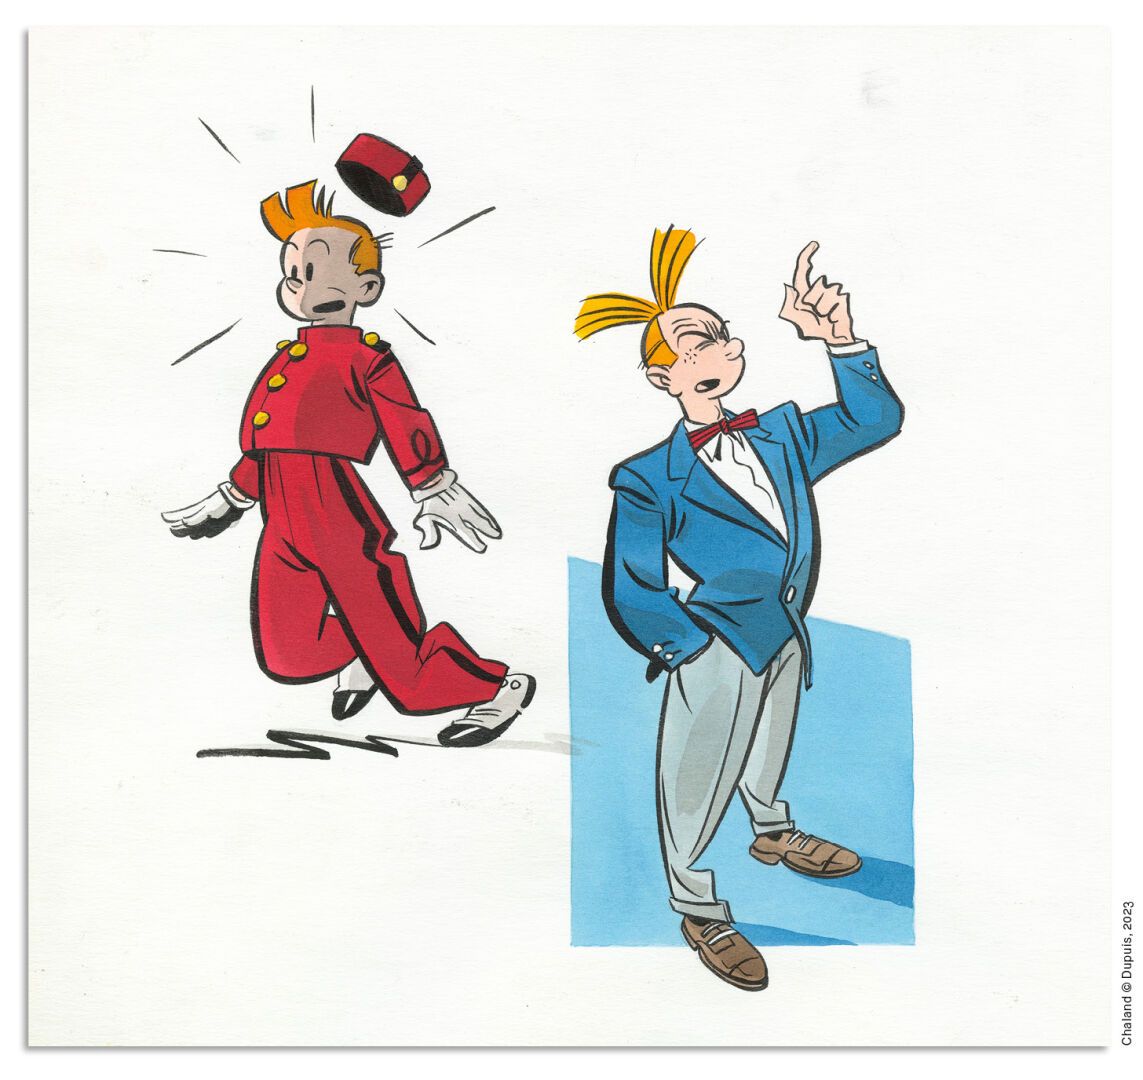 CHALAND YVES CHALAND
诗普鲁
杜普伊
1982年创作的原创插图，是布鲁塞尔Jijé博物馆举办的斯皮鲁1938-2004年回顾展的目录封面。这&hellip;